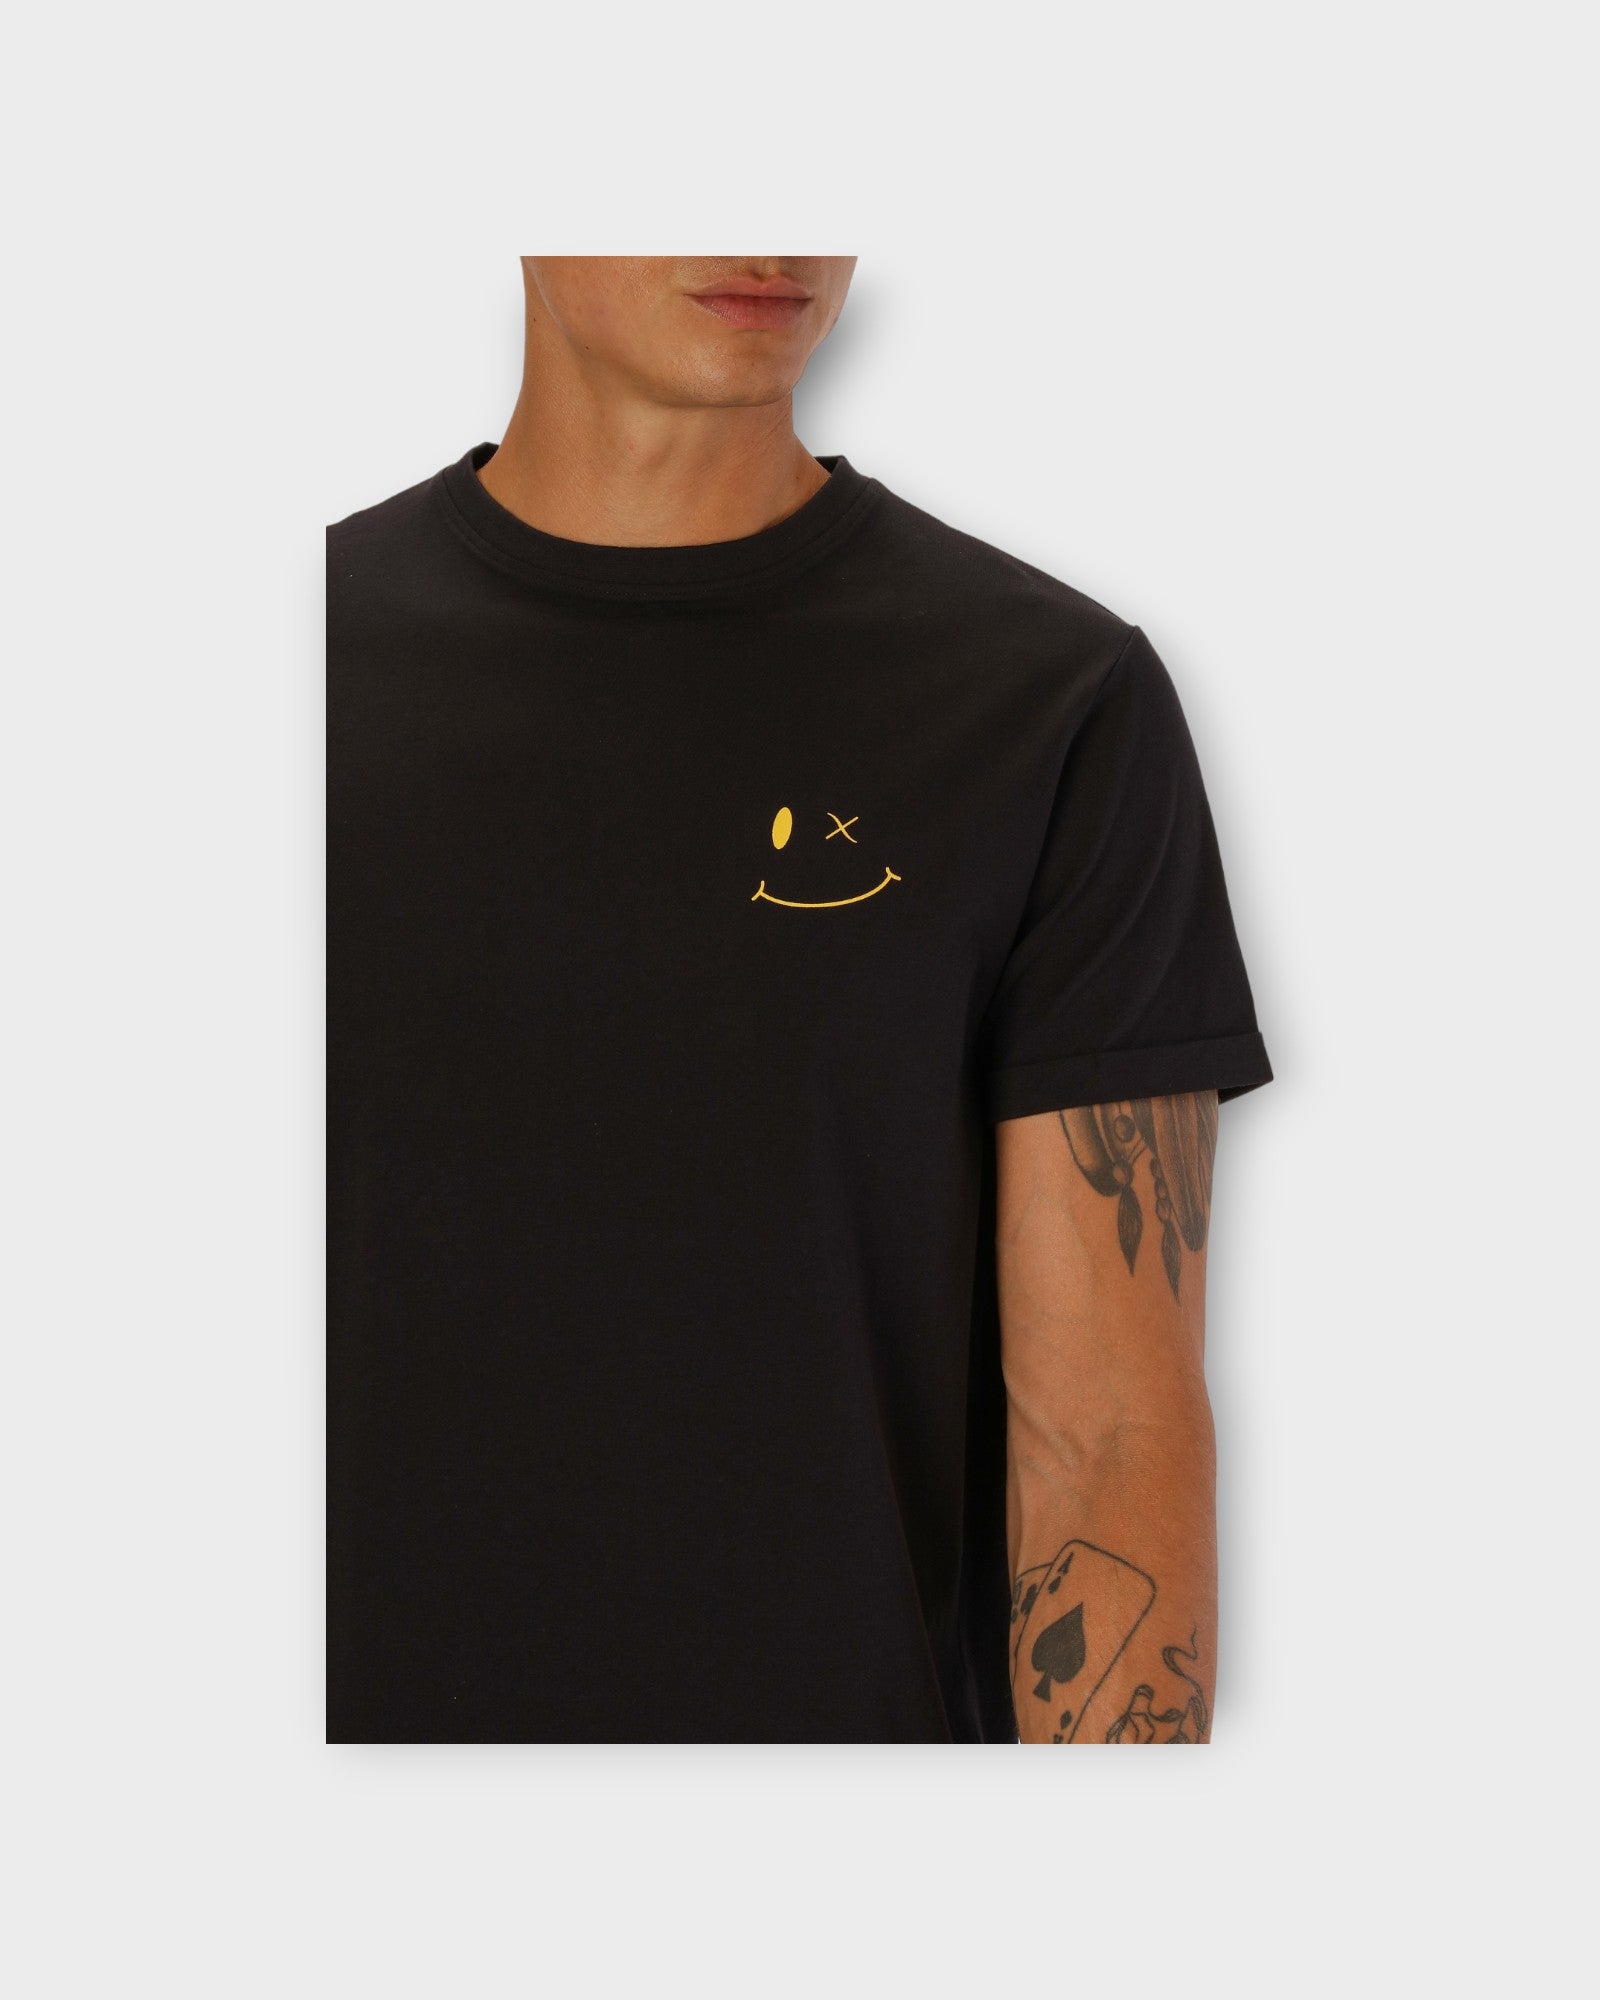 Patrick Organic Tee Black - Sort Clean Cut Copenhagen T-shirt til mænd med logo. Her ses logoet.